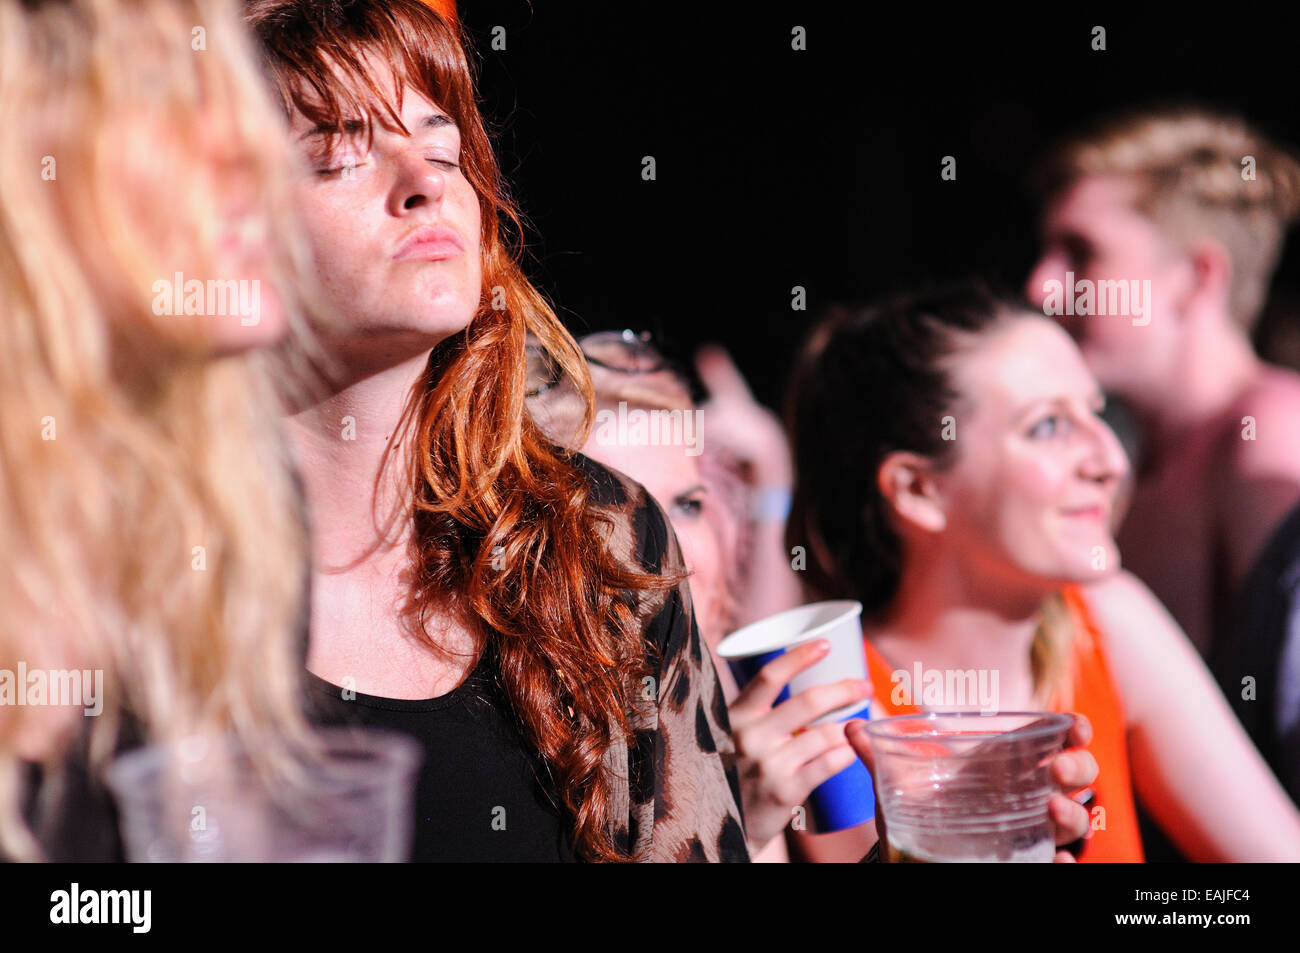 BENICASIM, ESPAGNE - 19 juillet : Femme rousse de l'auditoire applaudir à FIB (Festival Internacional de Benicassim). Banque D'Images